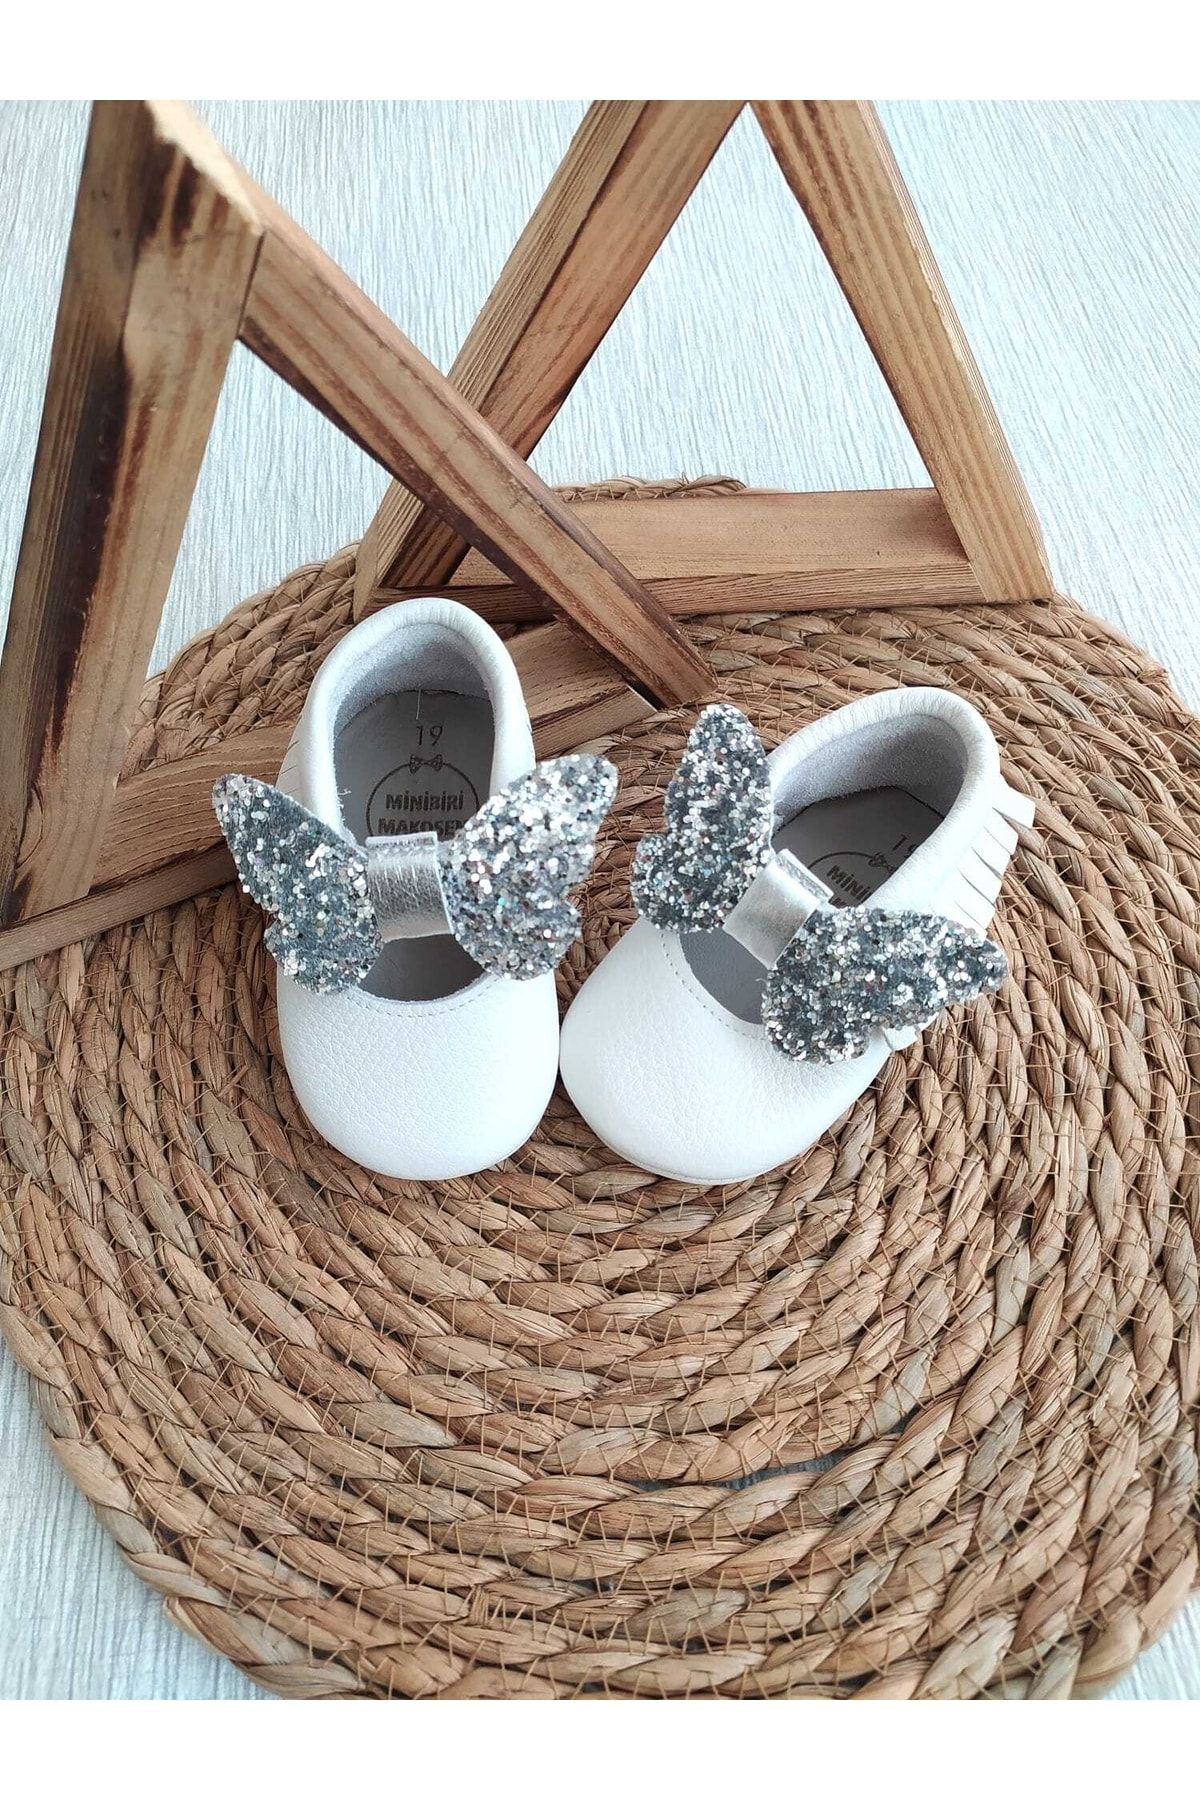 MİNİBİRİ Bella Model Payet Fiyonklu Bebek Makosen Patik Bebek Ayakkabısı